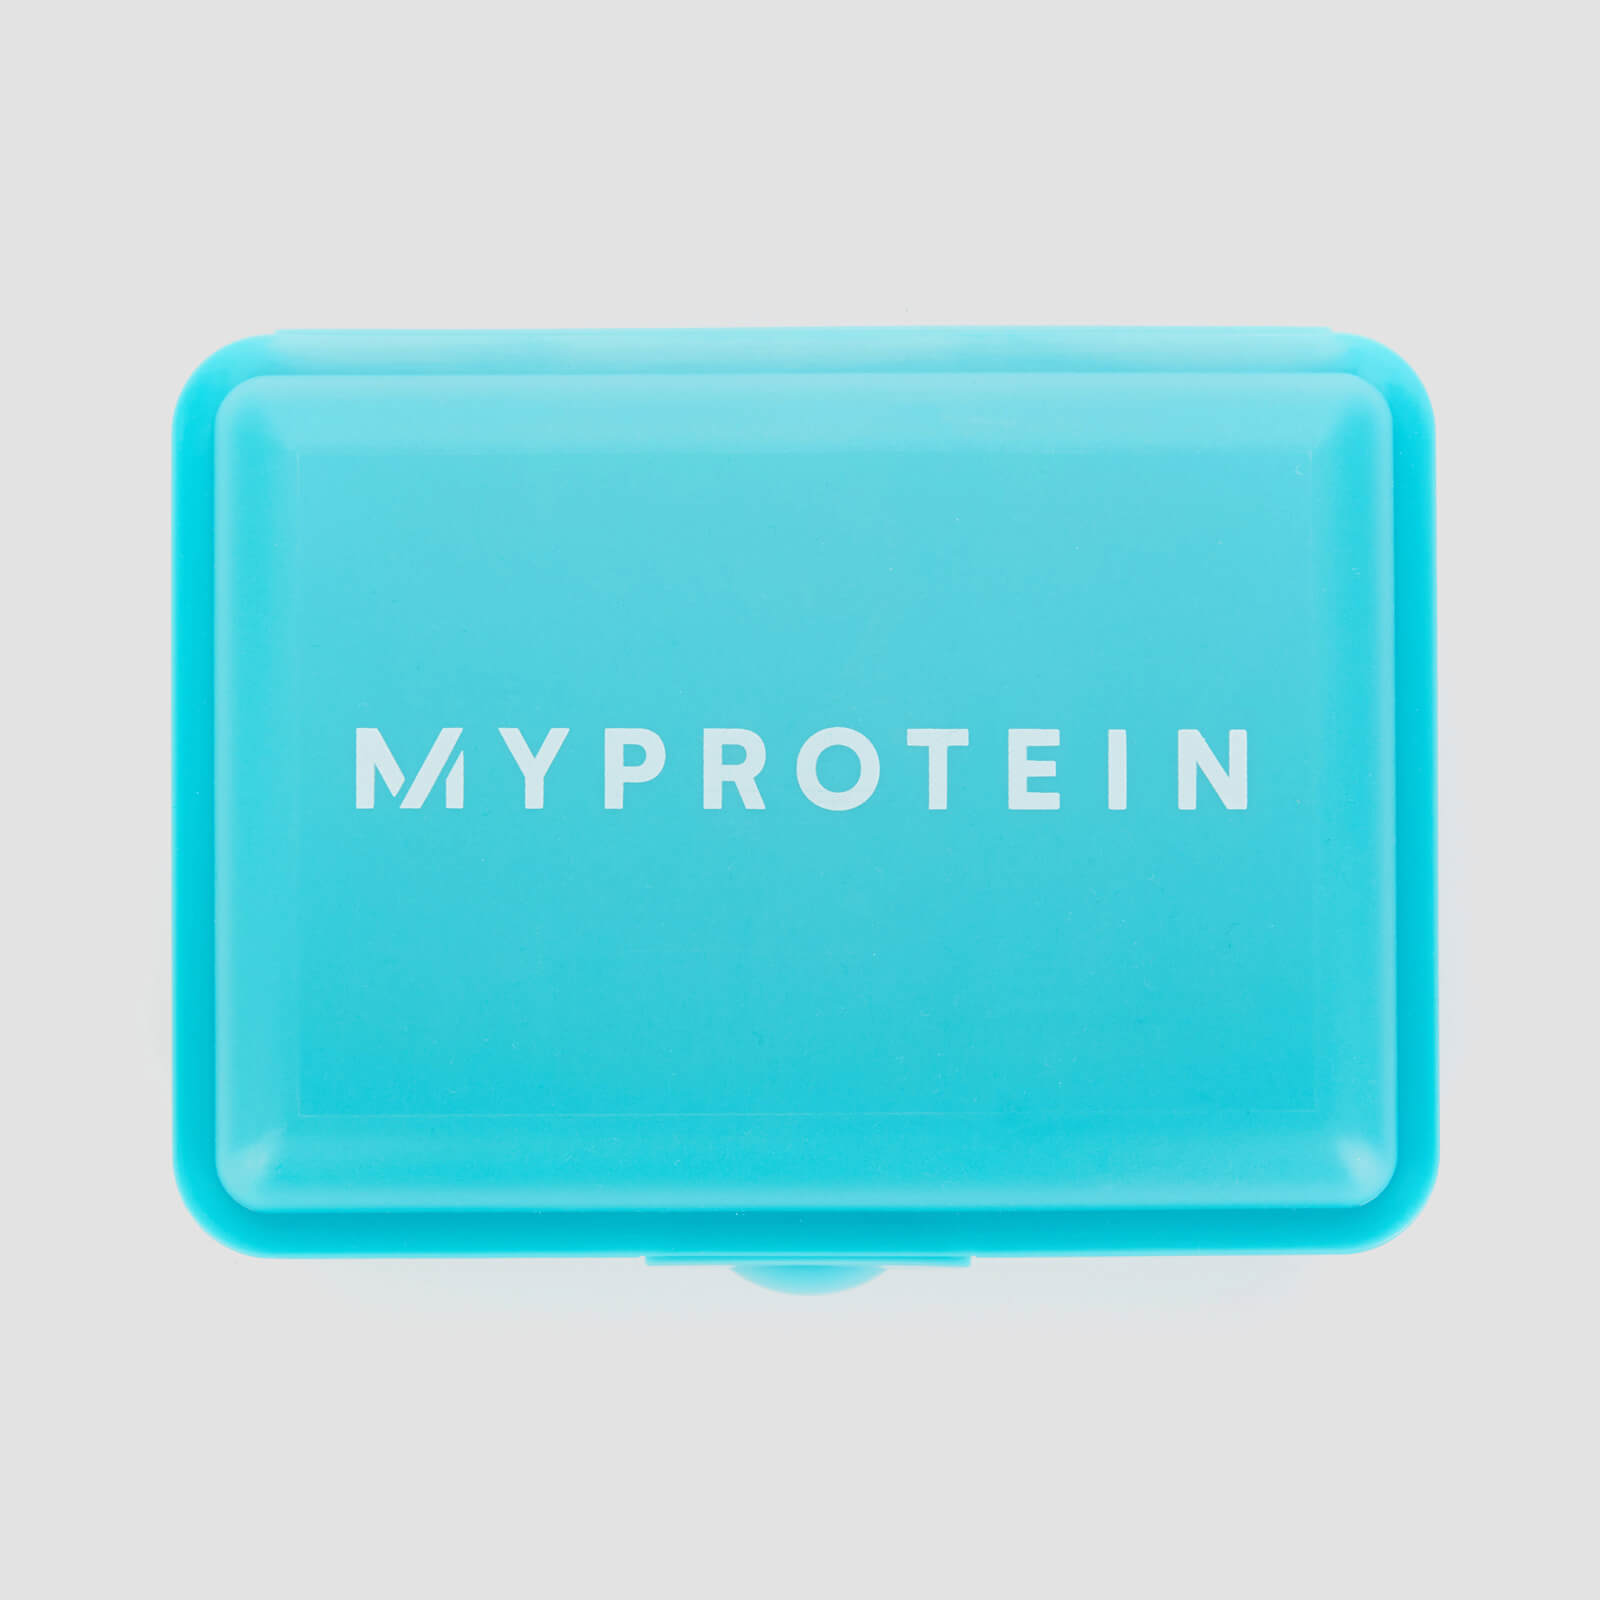 Myprotein Caixa Klick Pequena